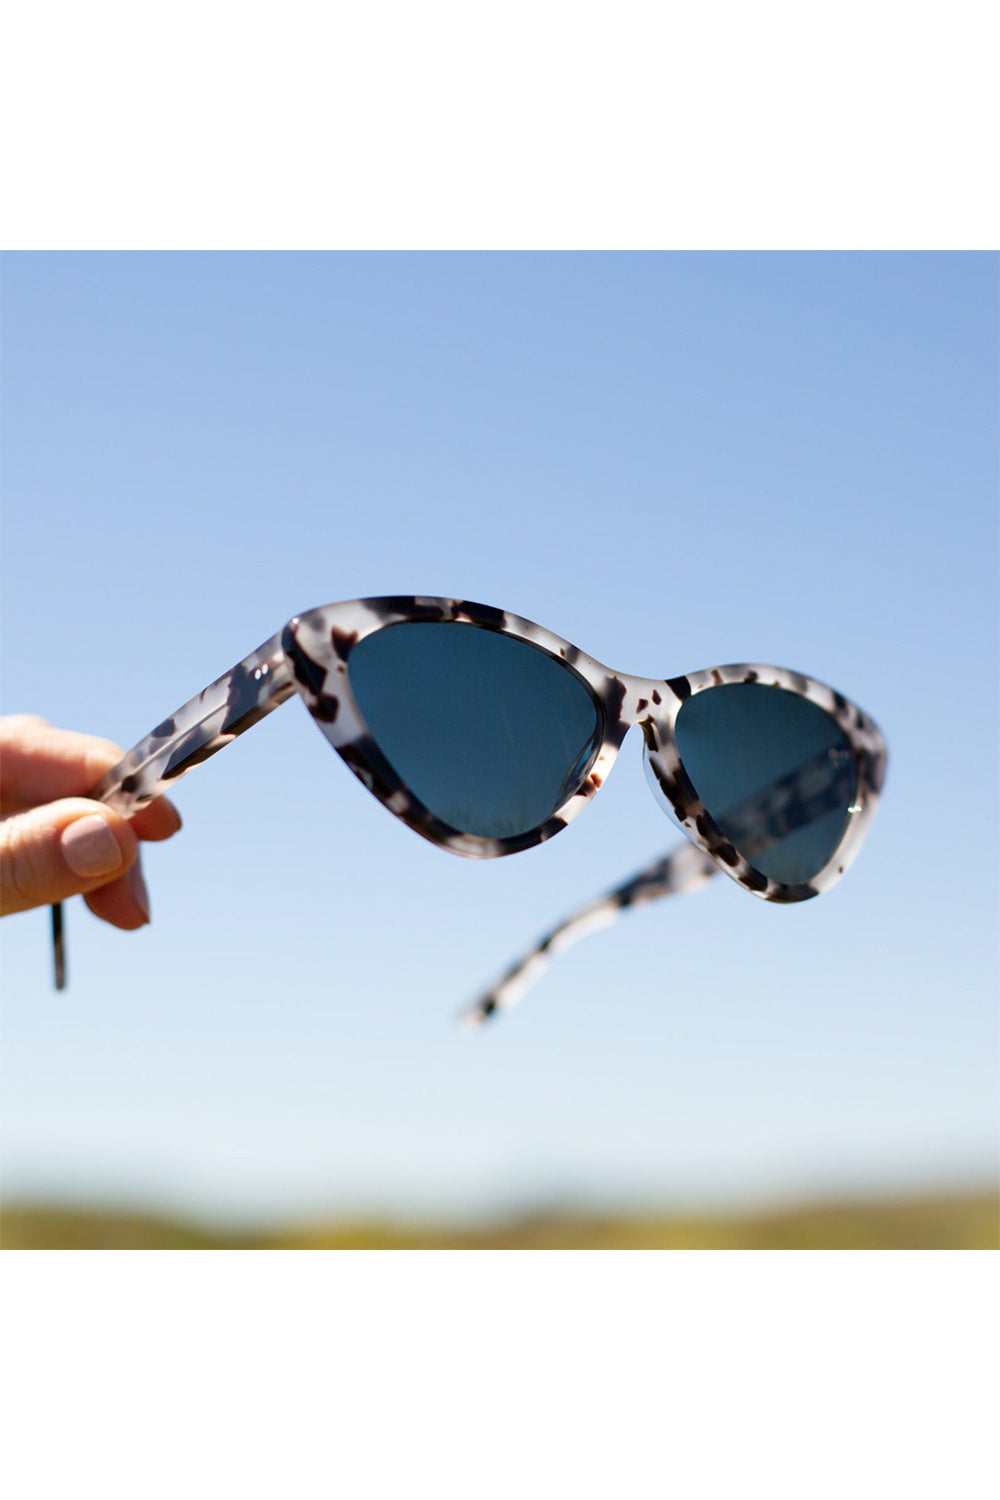 Sito Seduction Sunglasses